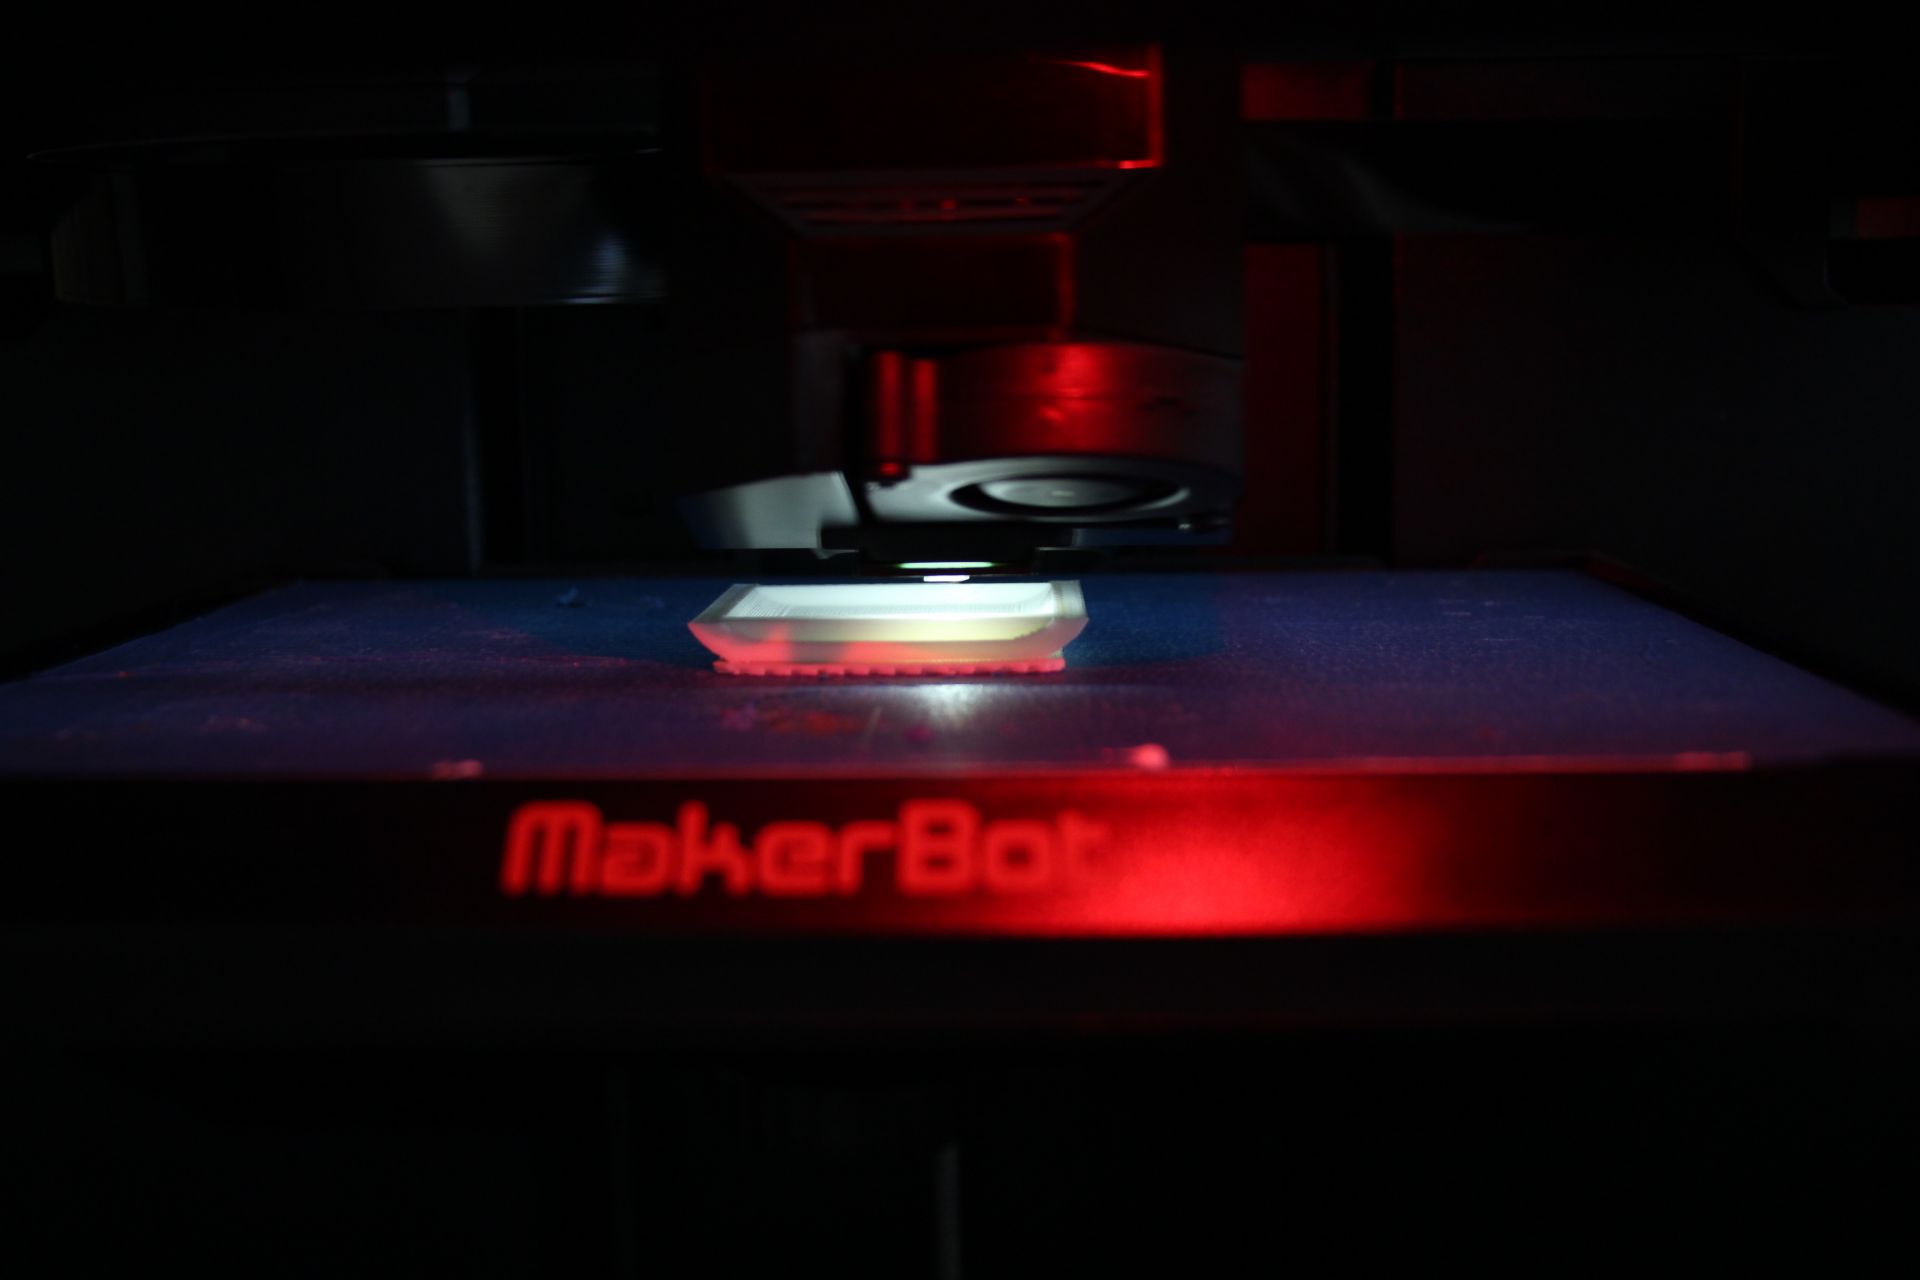 Publicidade e Propaganda e Engenharia Mecânica desenvolvem trabalho em impressão 3D